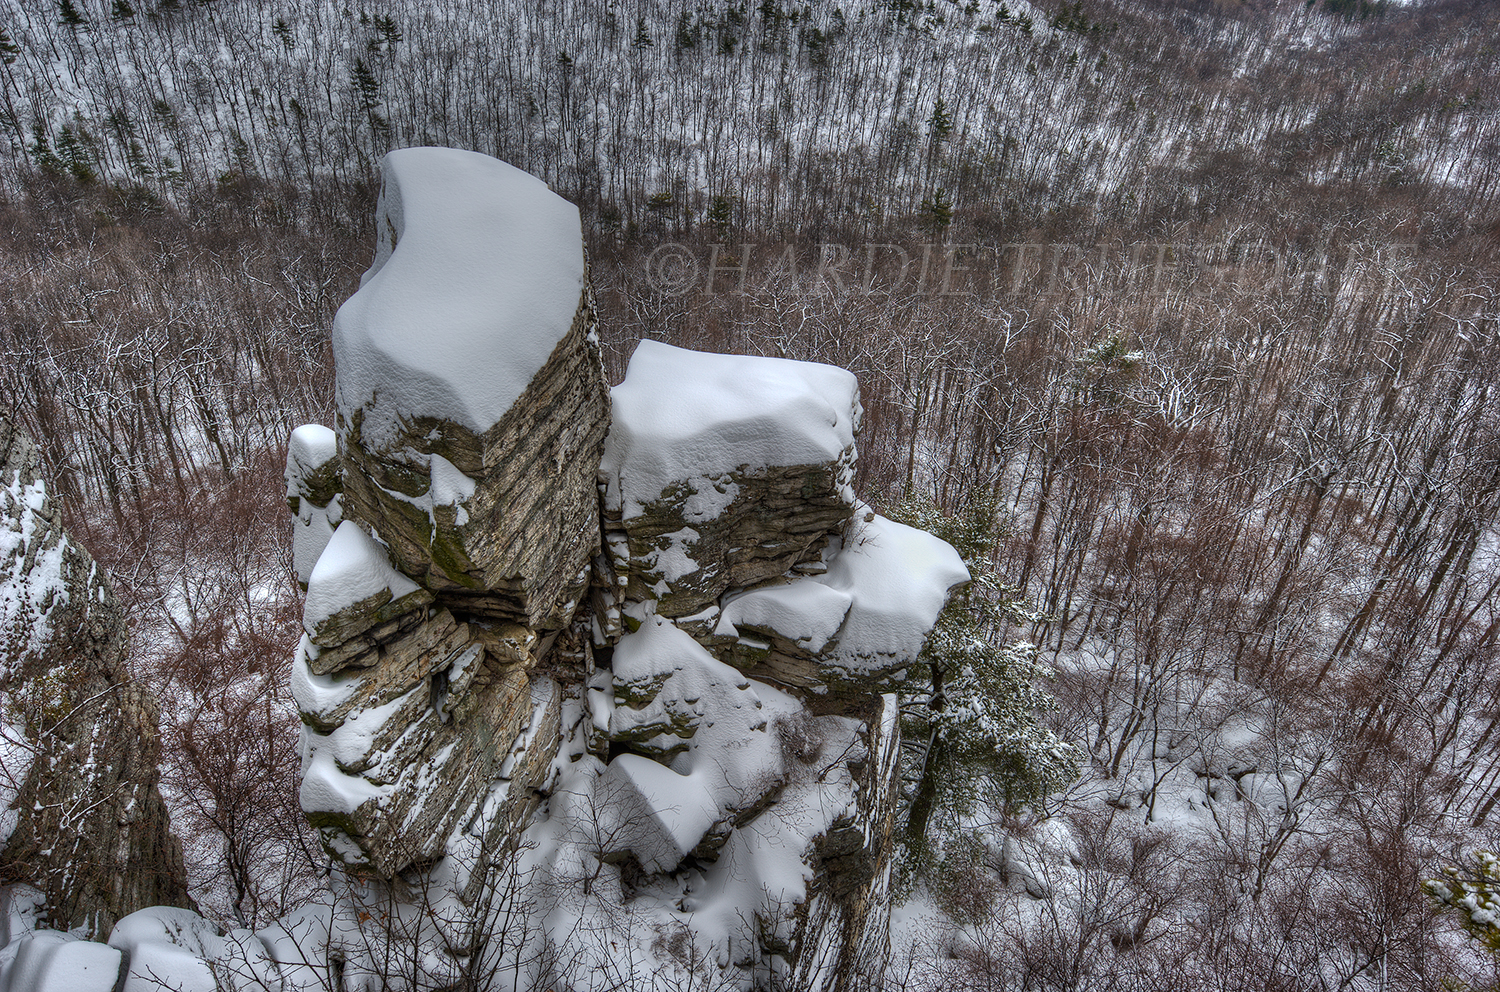  Gks#812 "Snow Storm, Pinnacle Path" 